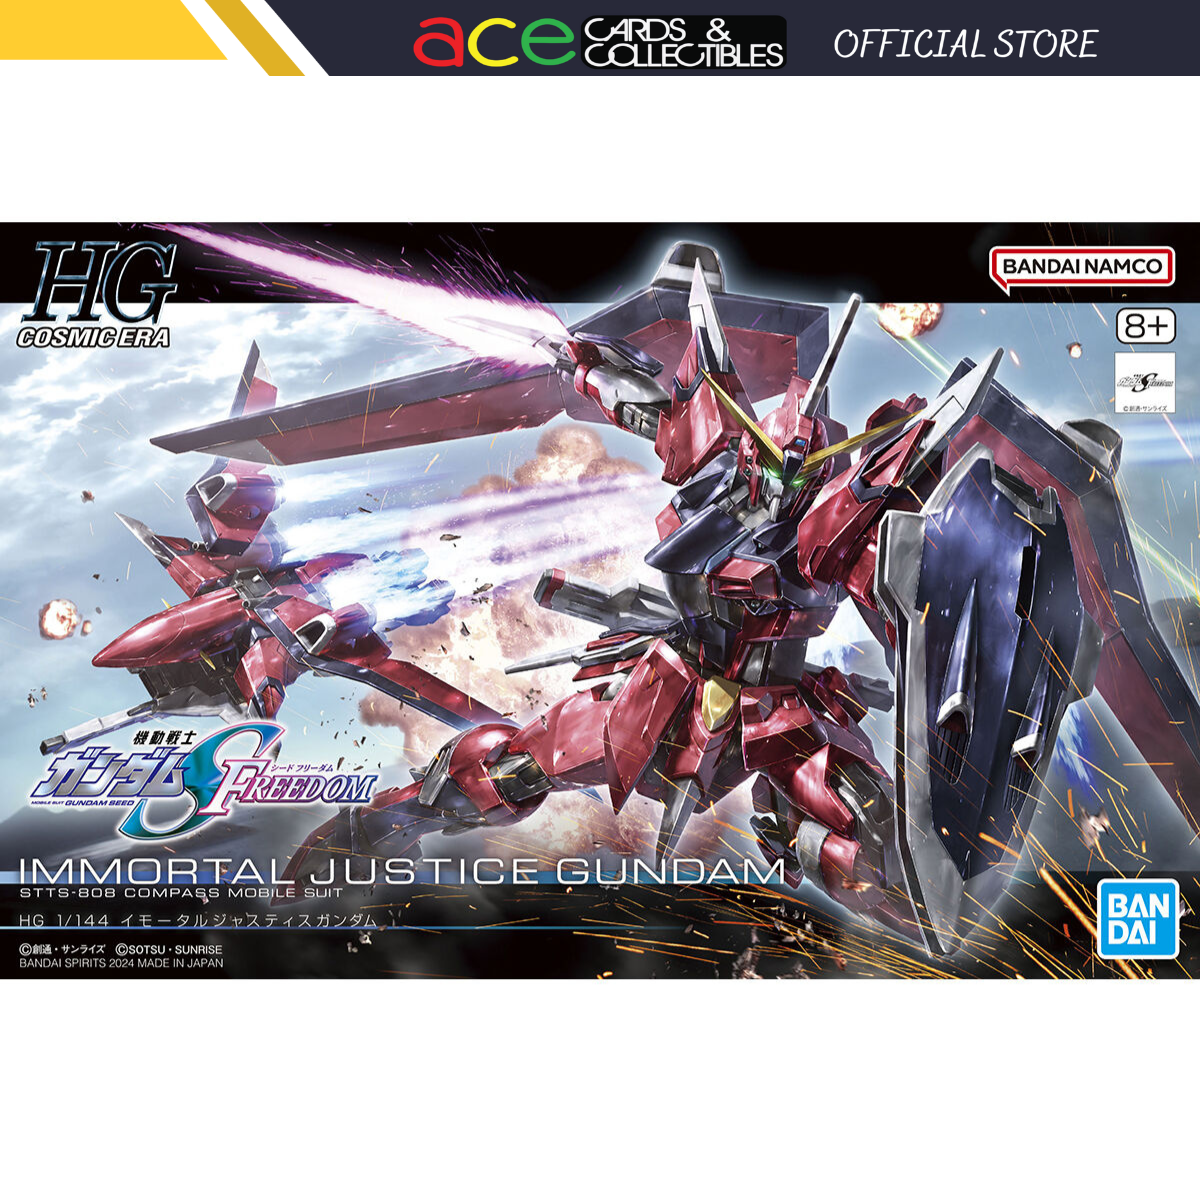 Gunpla HG 1/144 Immortal Justice Gundam-Bandai-Ace Cards & Collectibles